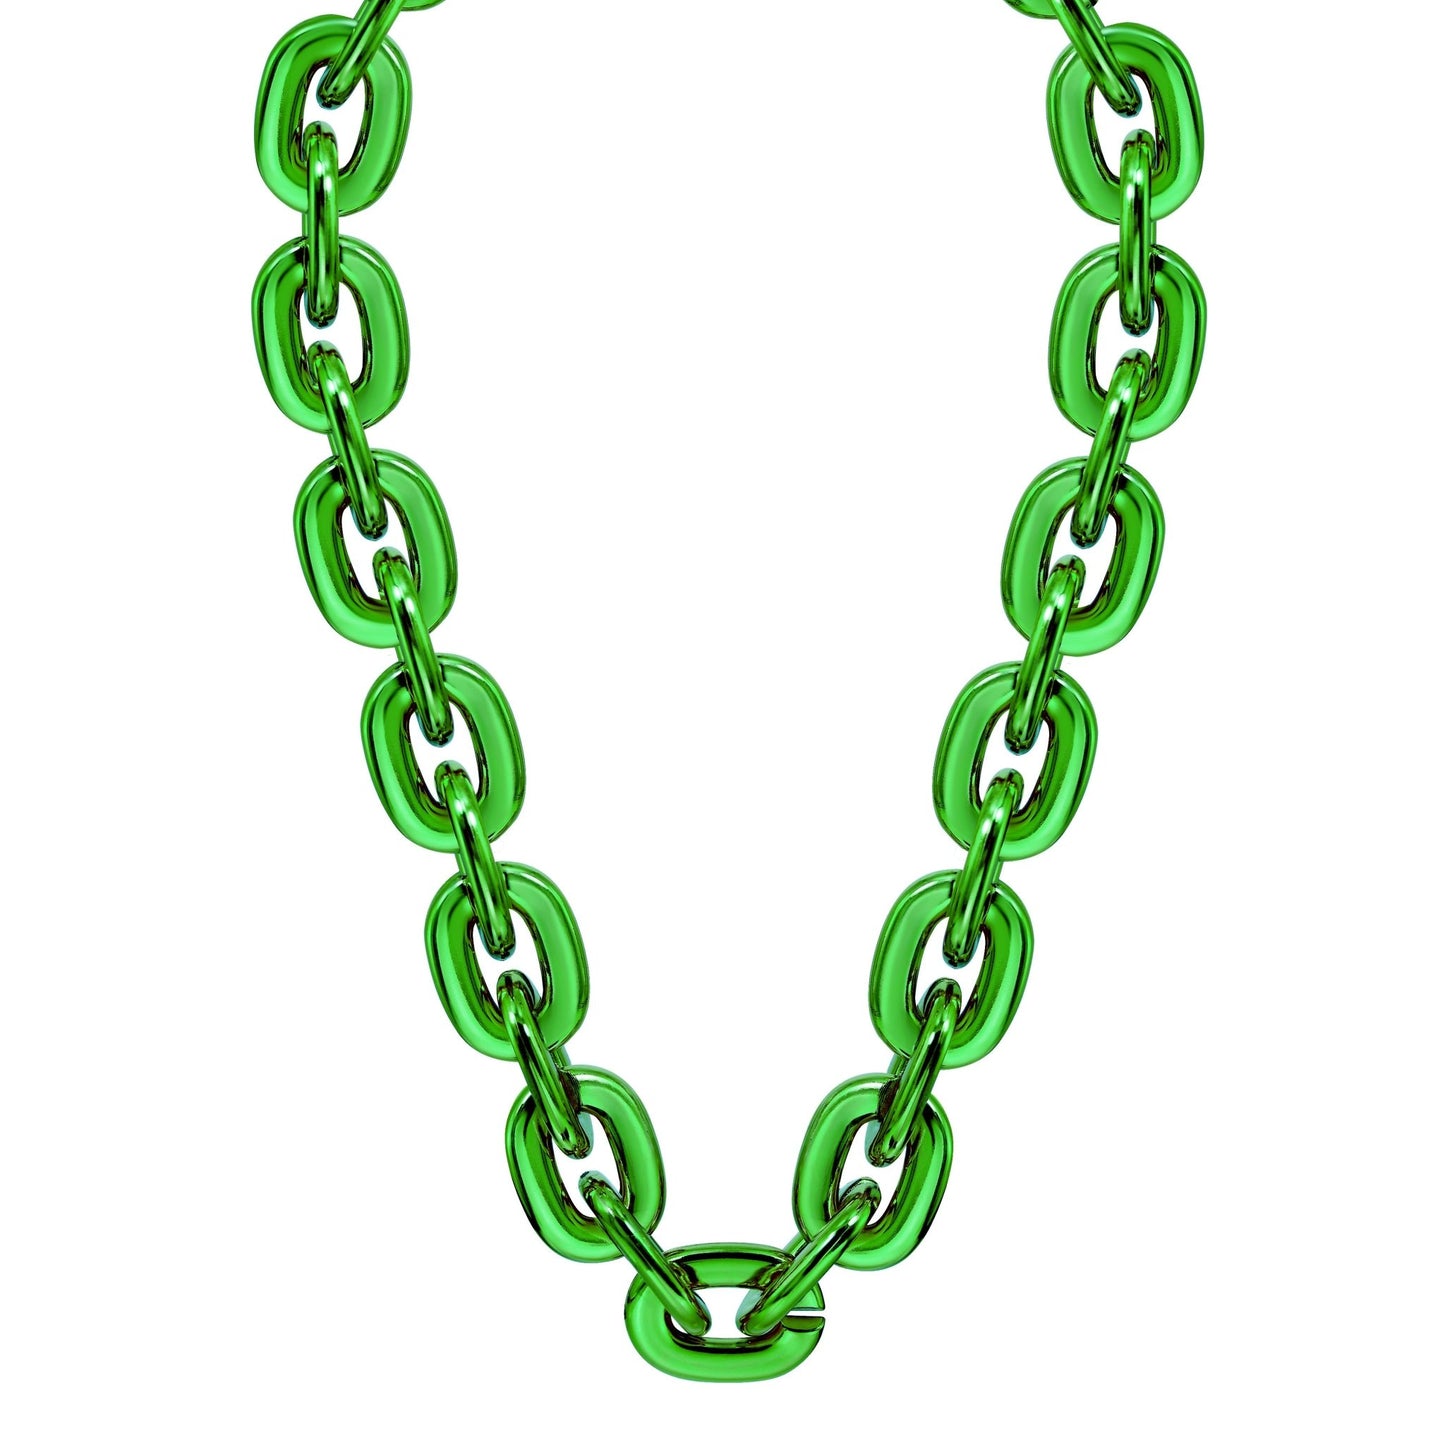 Jumbo Fan Chain Necklace - Gamedays Gear - Green